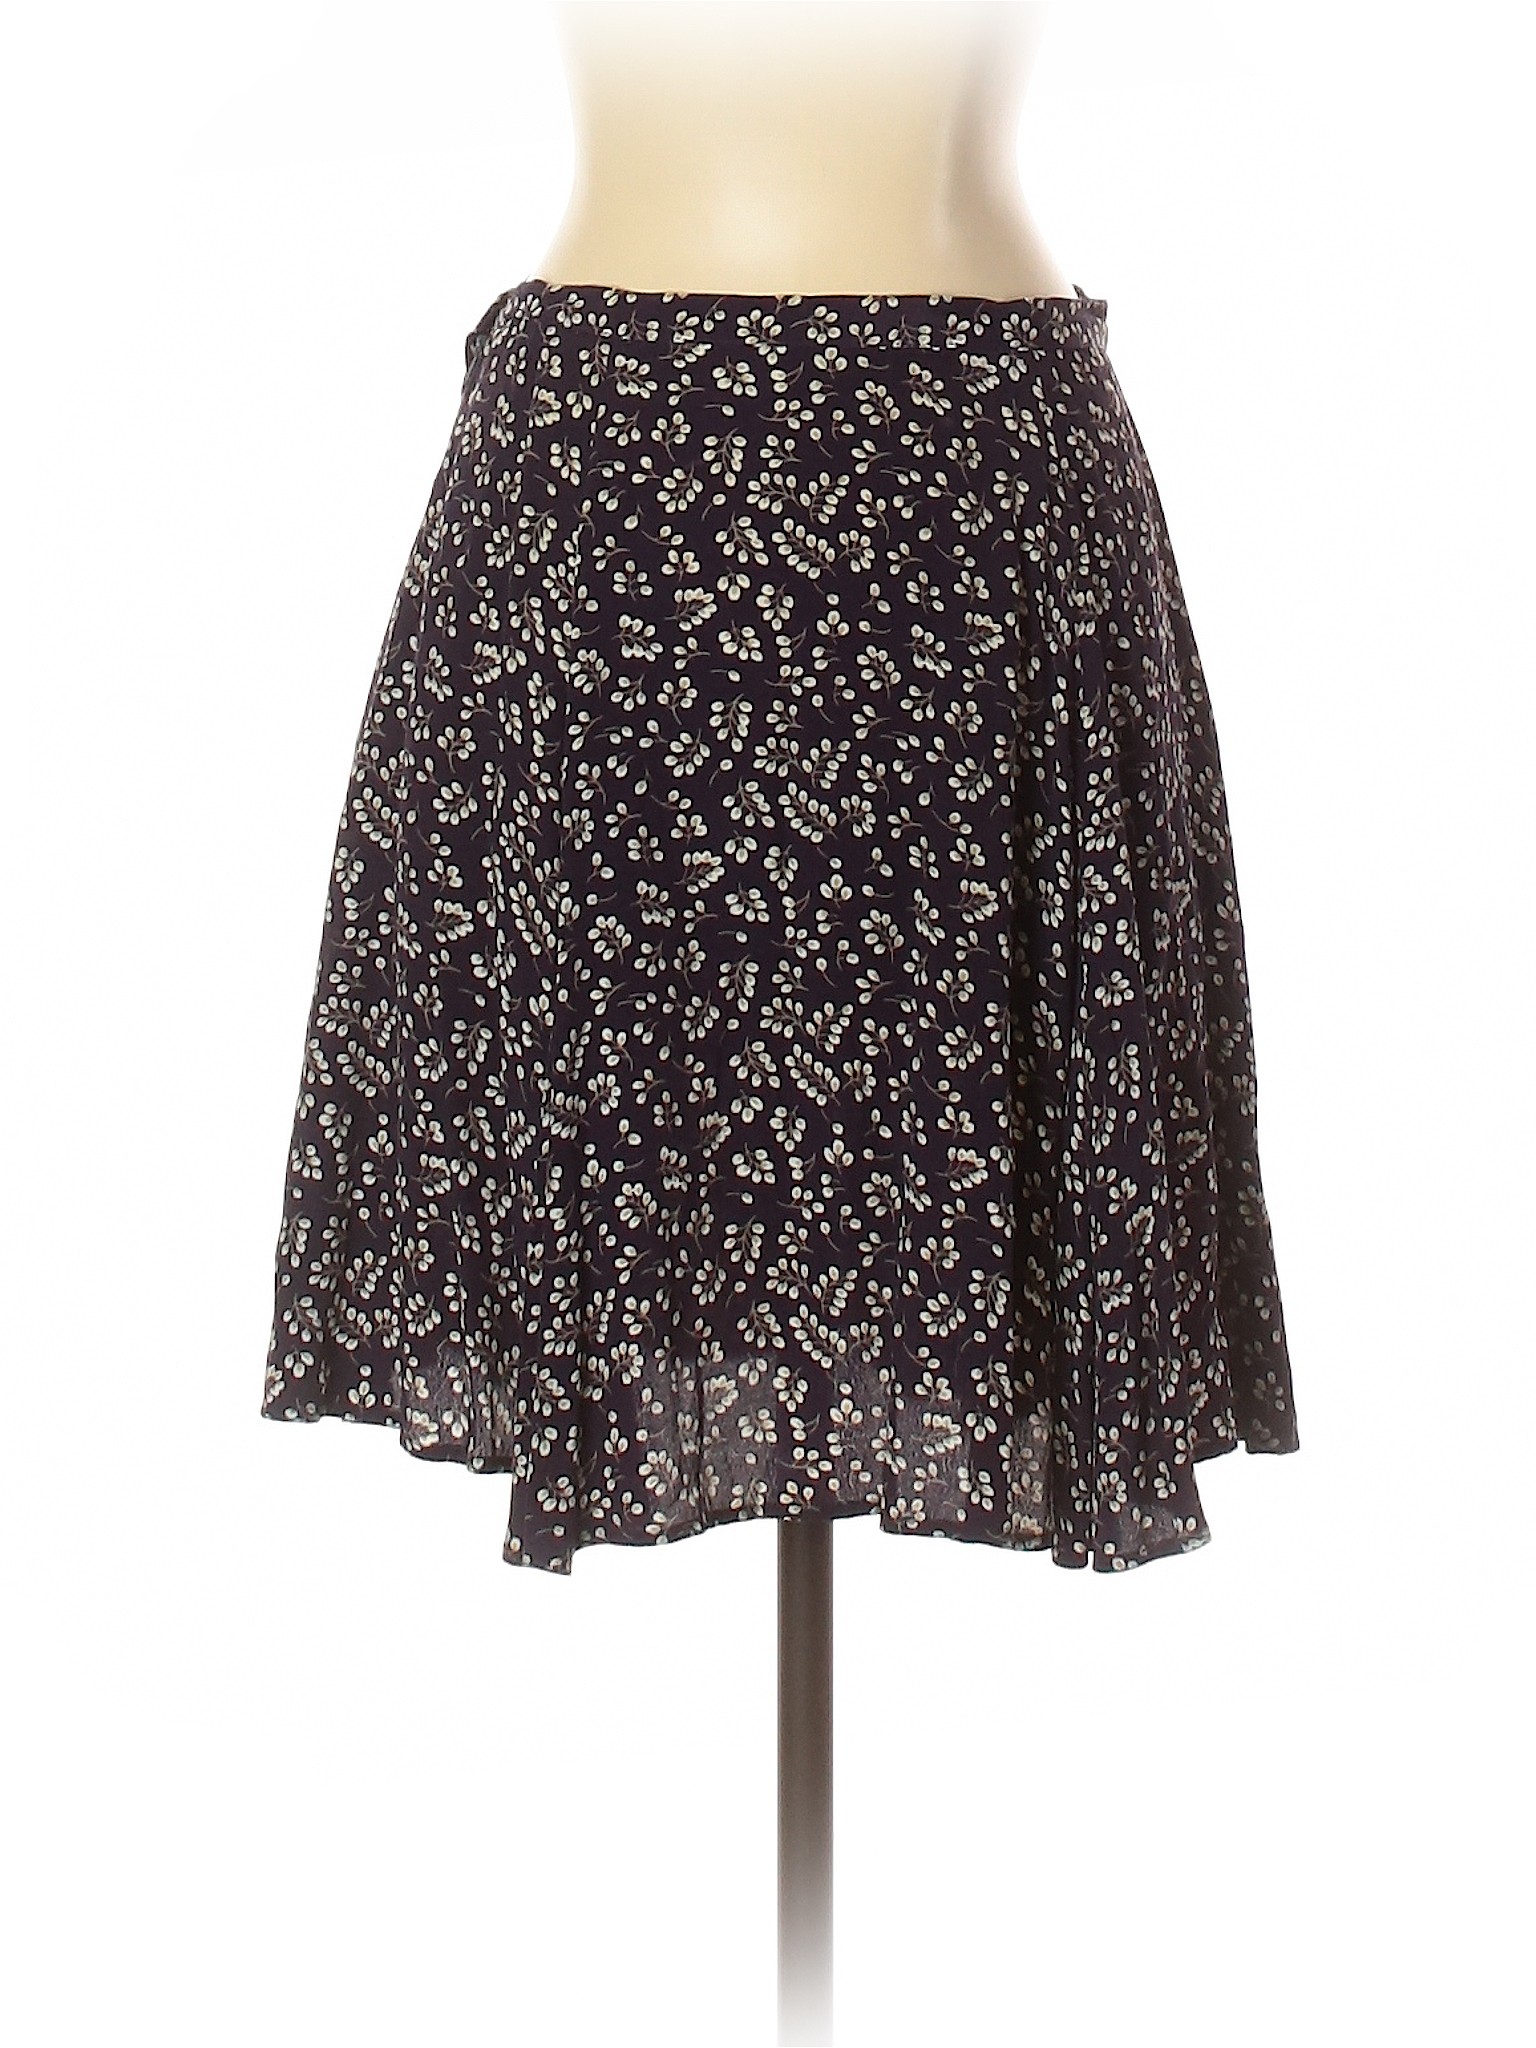 Ann Taylor Women Purple Casual Skirt 6 | eBay